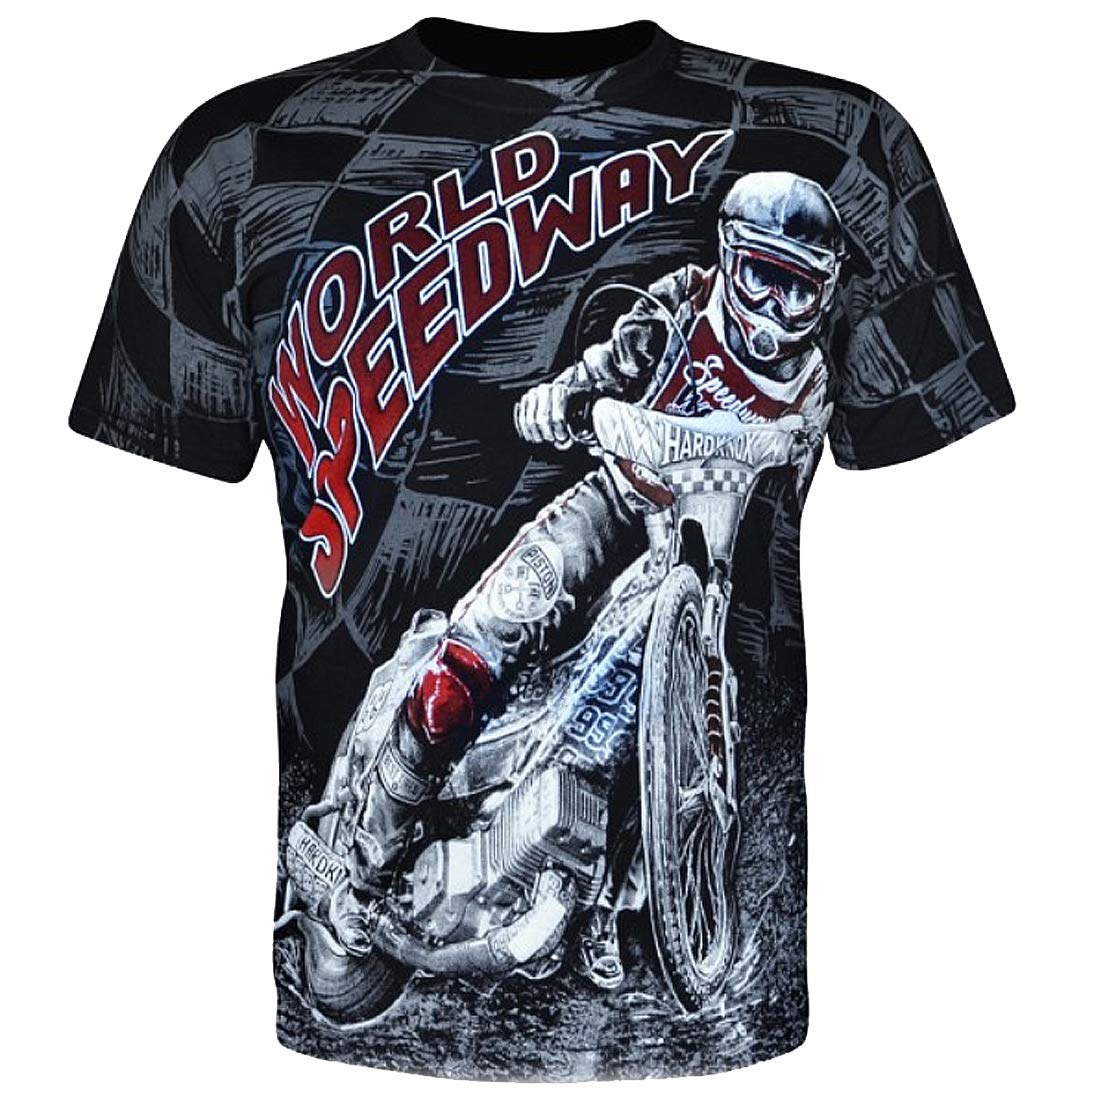 World Speedway - Herren T-Shirt (XXL)